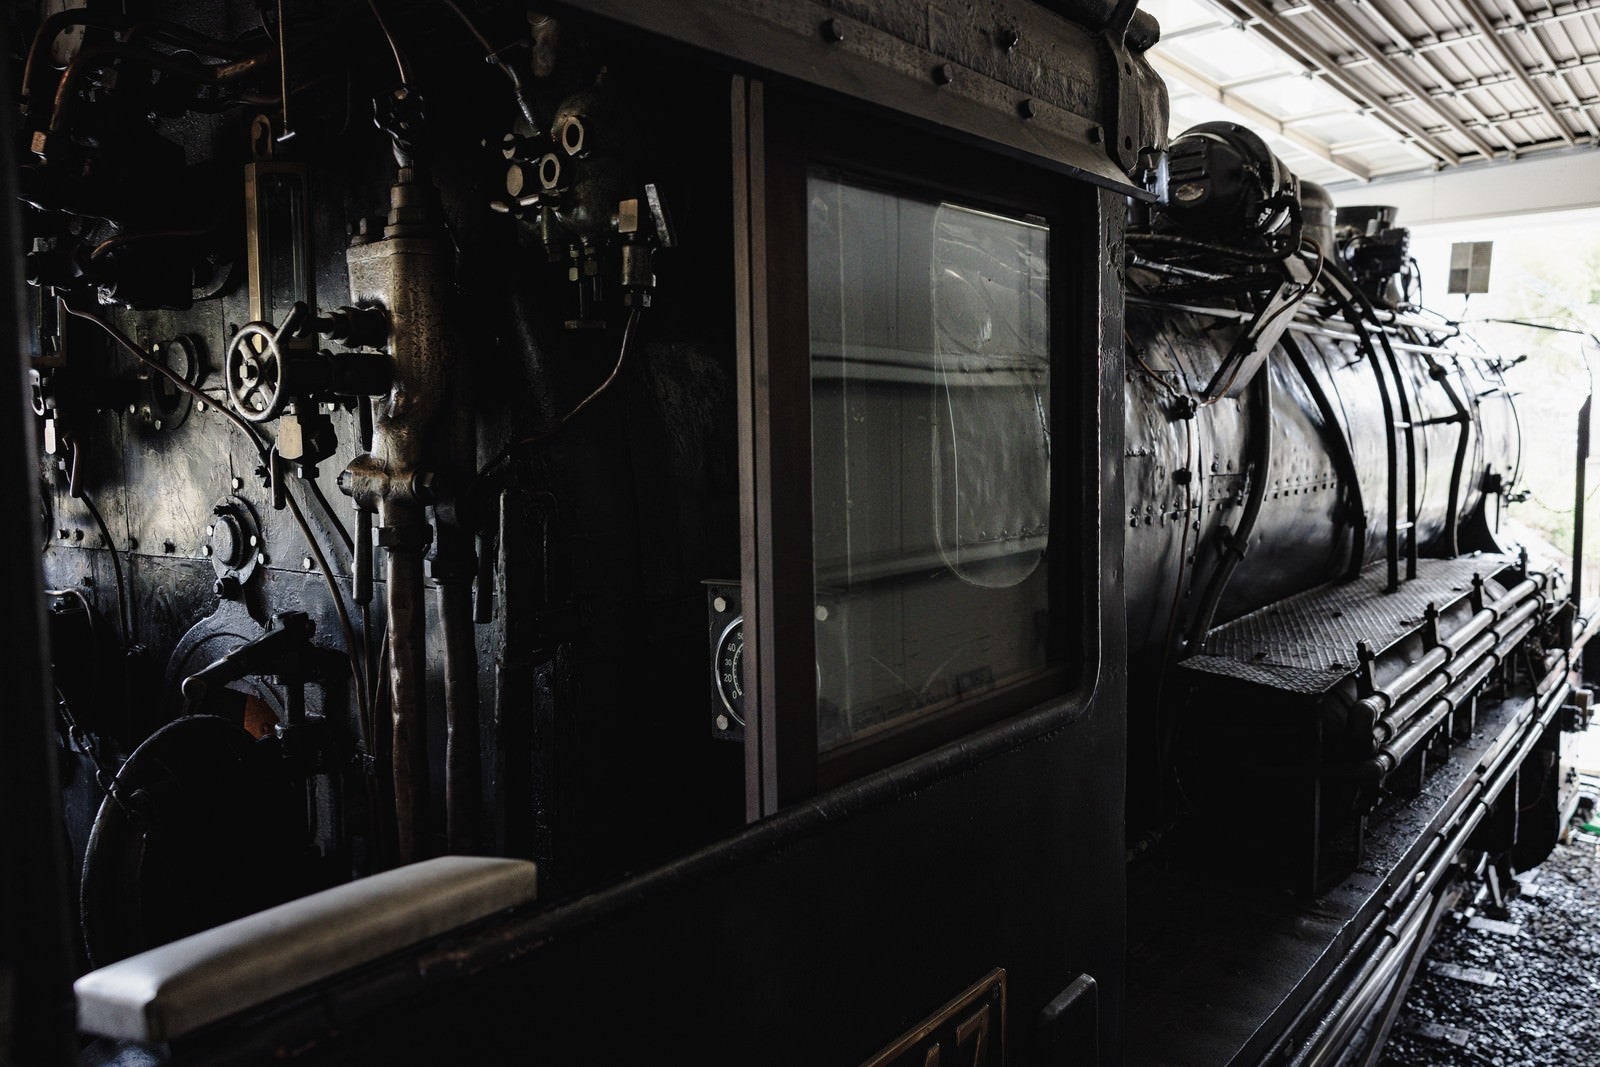 「蒸気機関車の機関室の様子」の写真